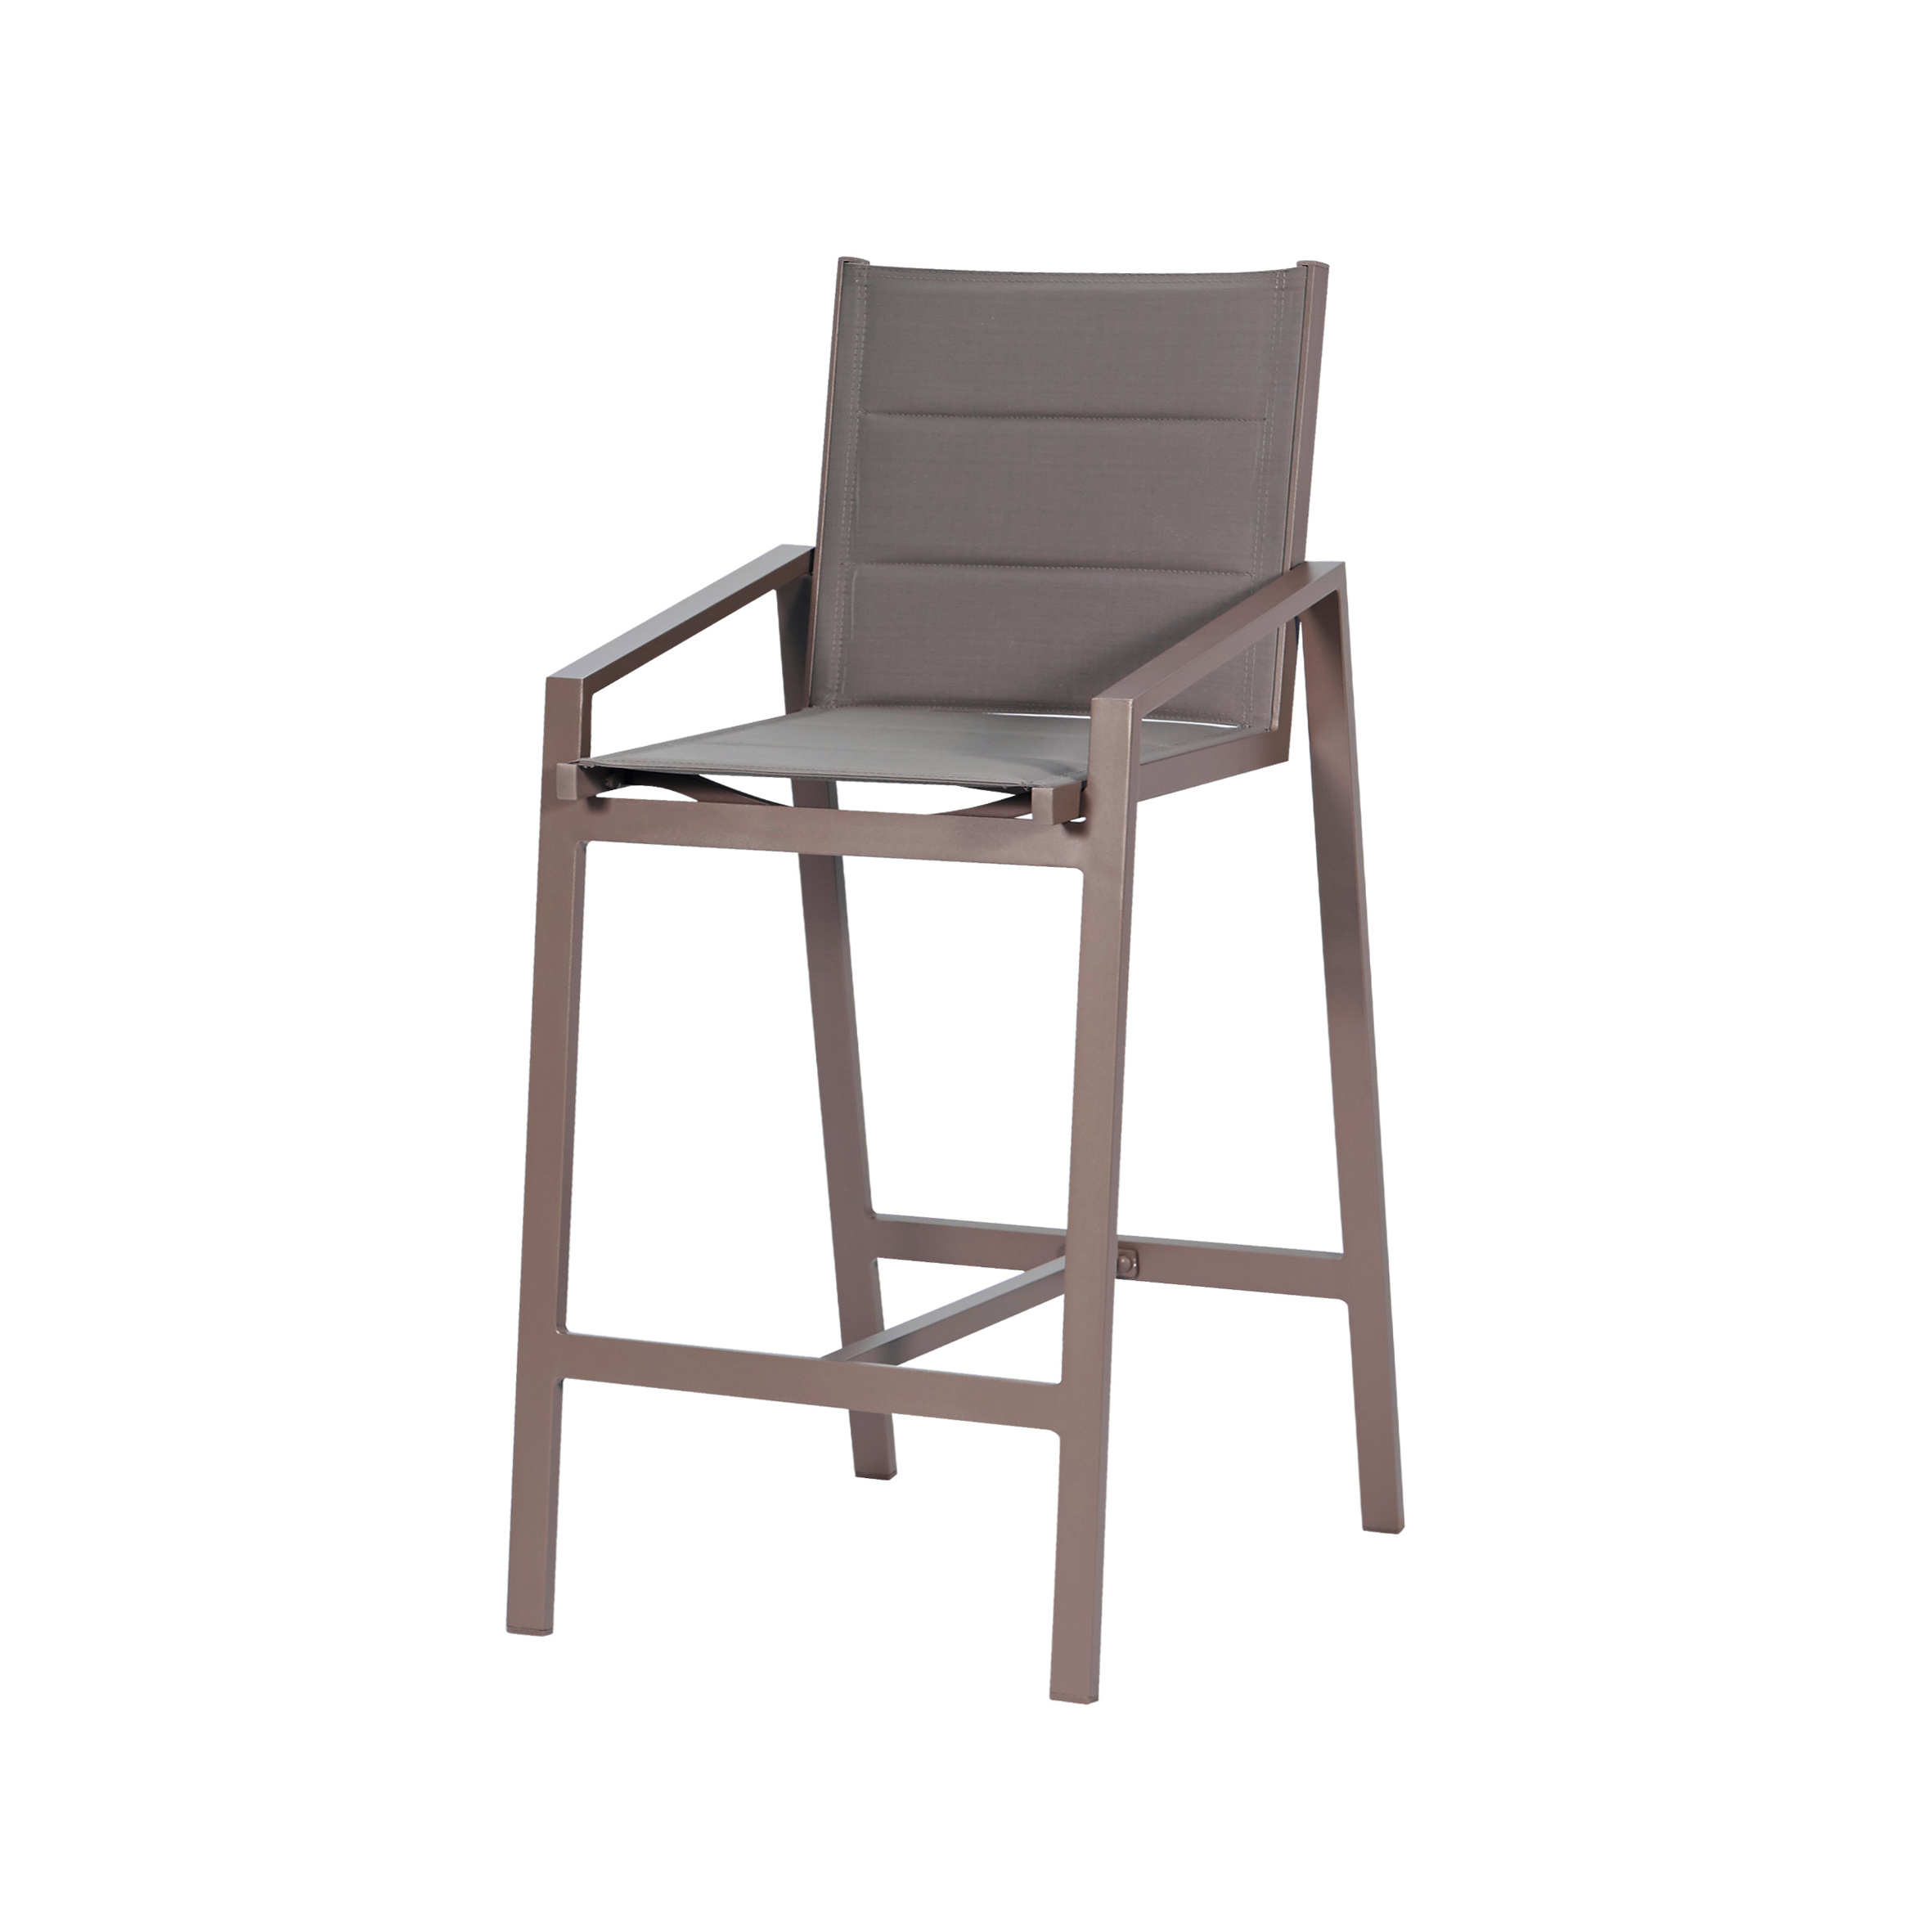 Білосніжний текстильний барний стілець S1